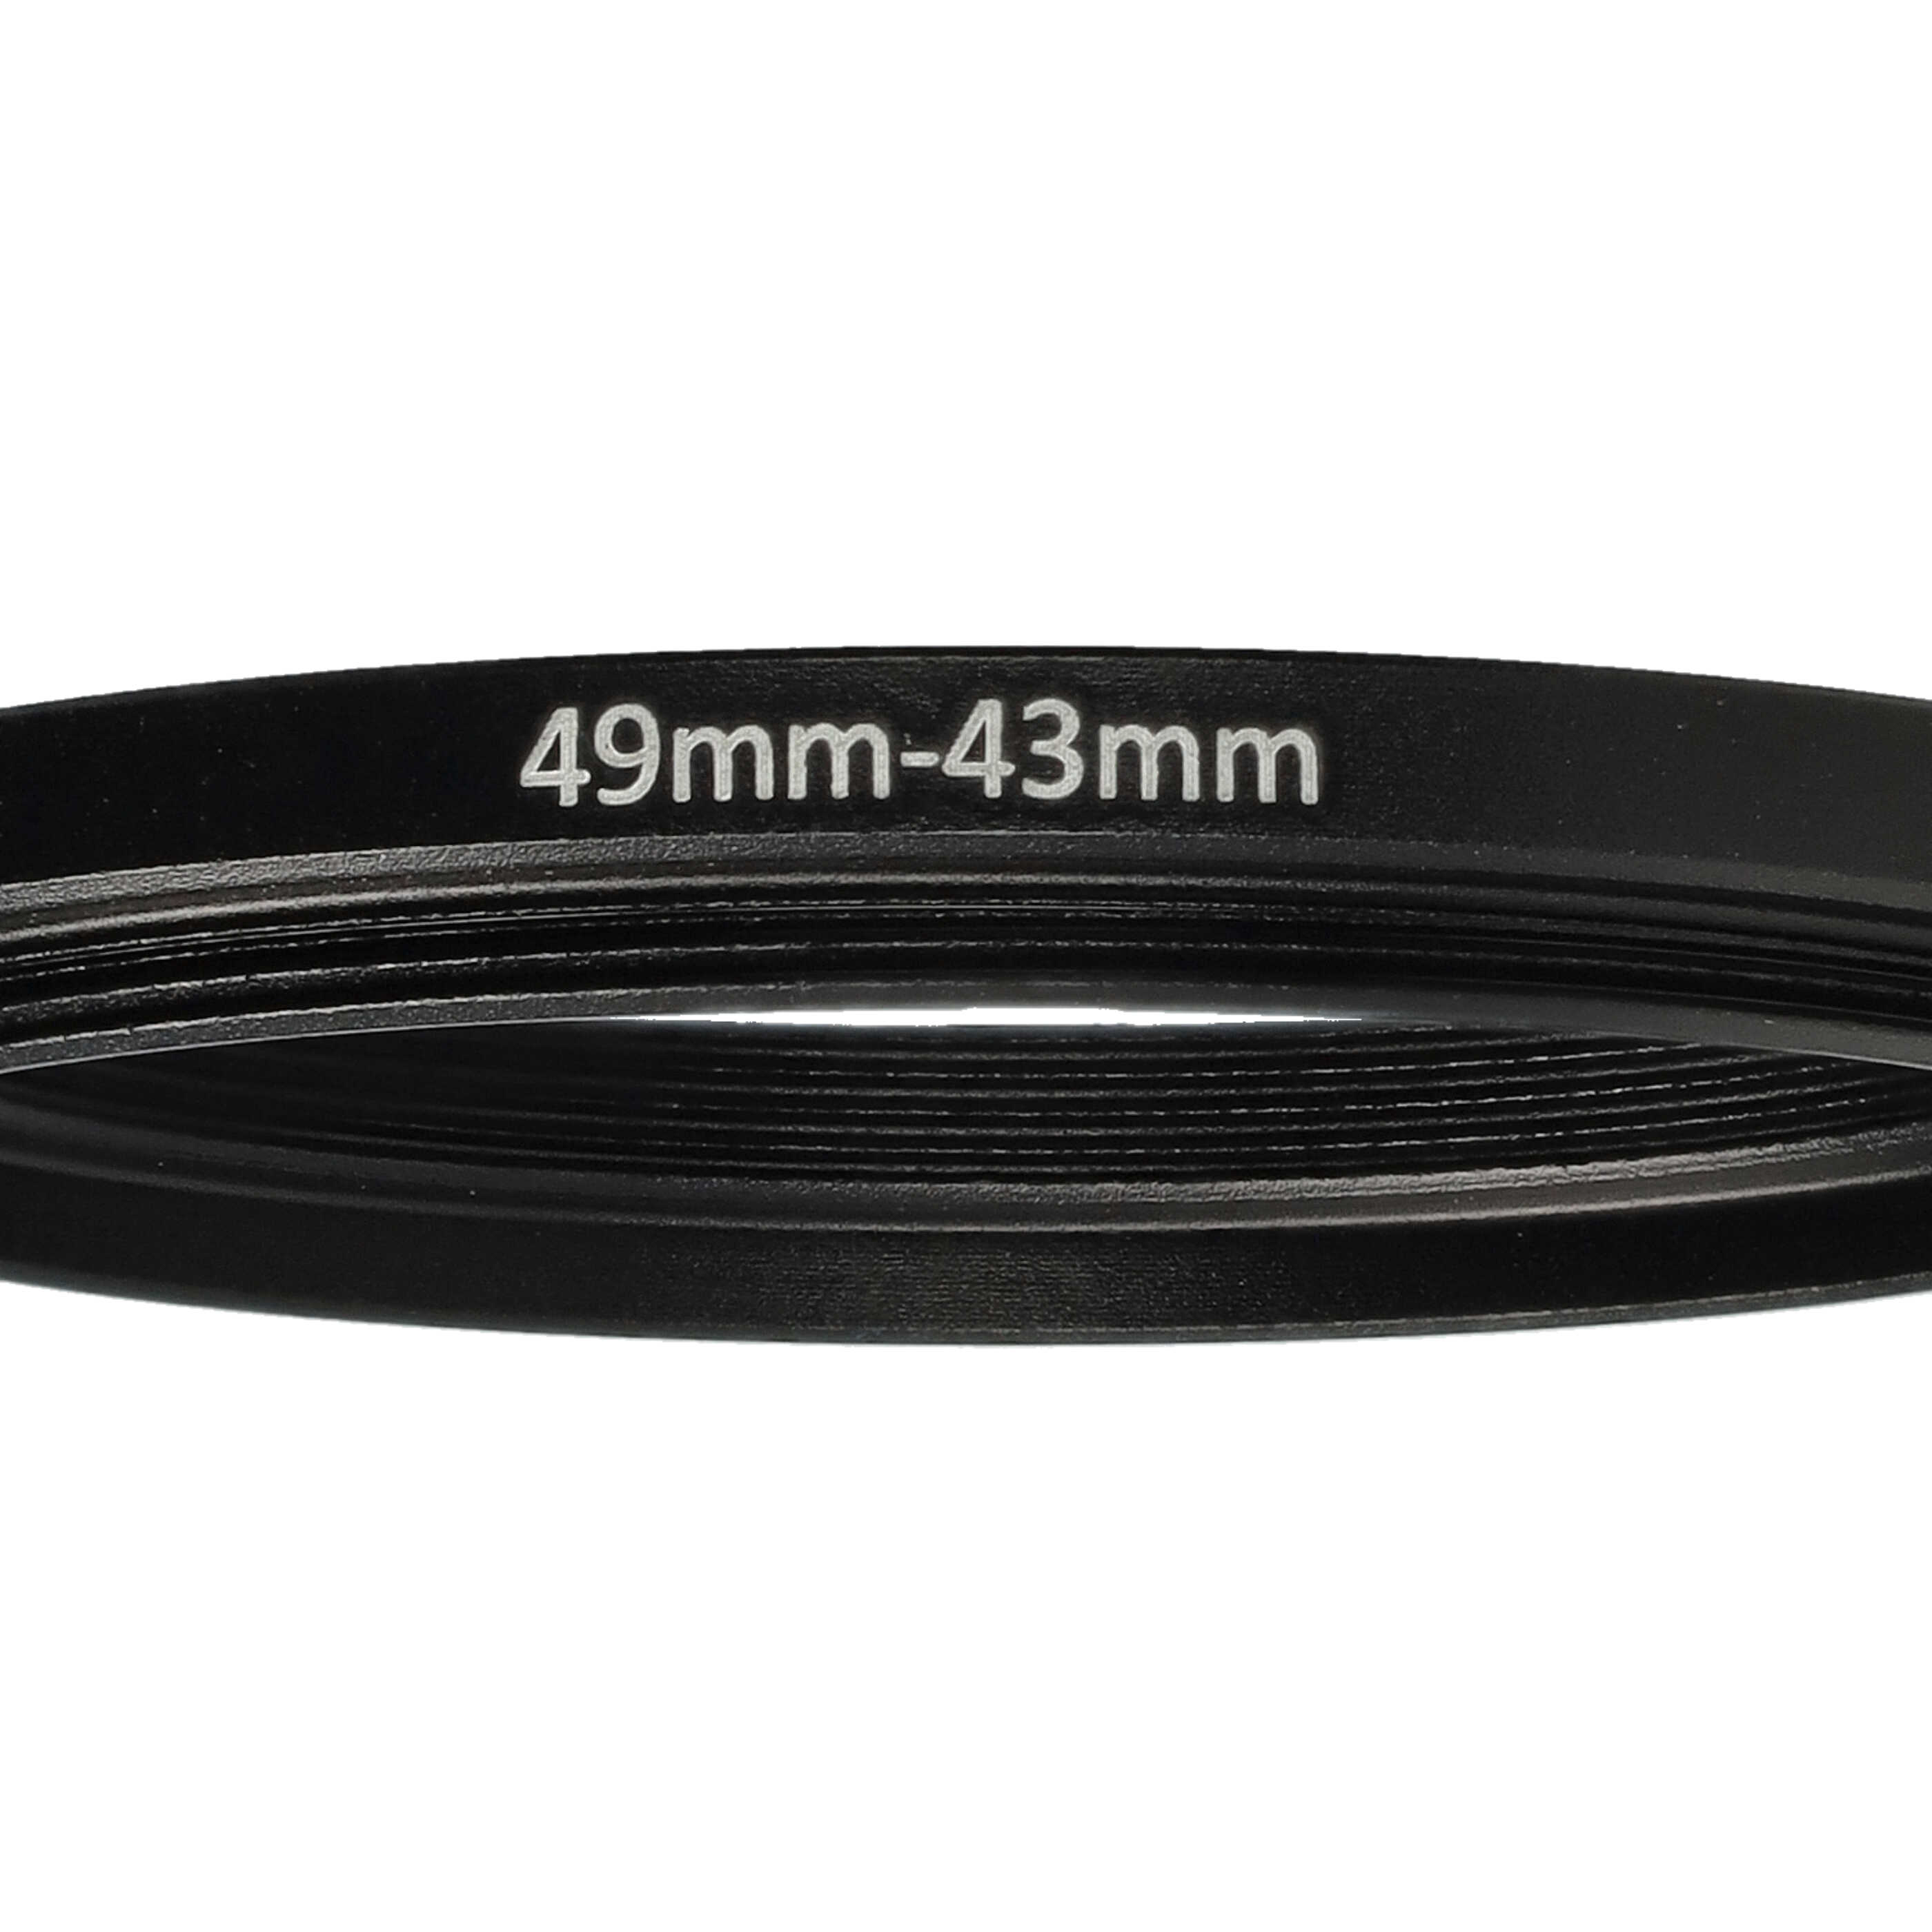 Anillo adaptador Step Down de 49 mm a 43 mm para objetivo de la cámara - Adaptador de filtro, metal, negro